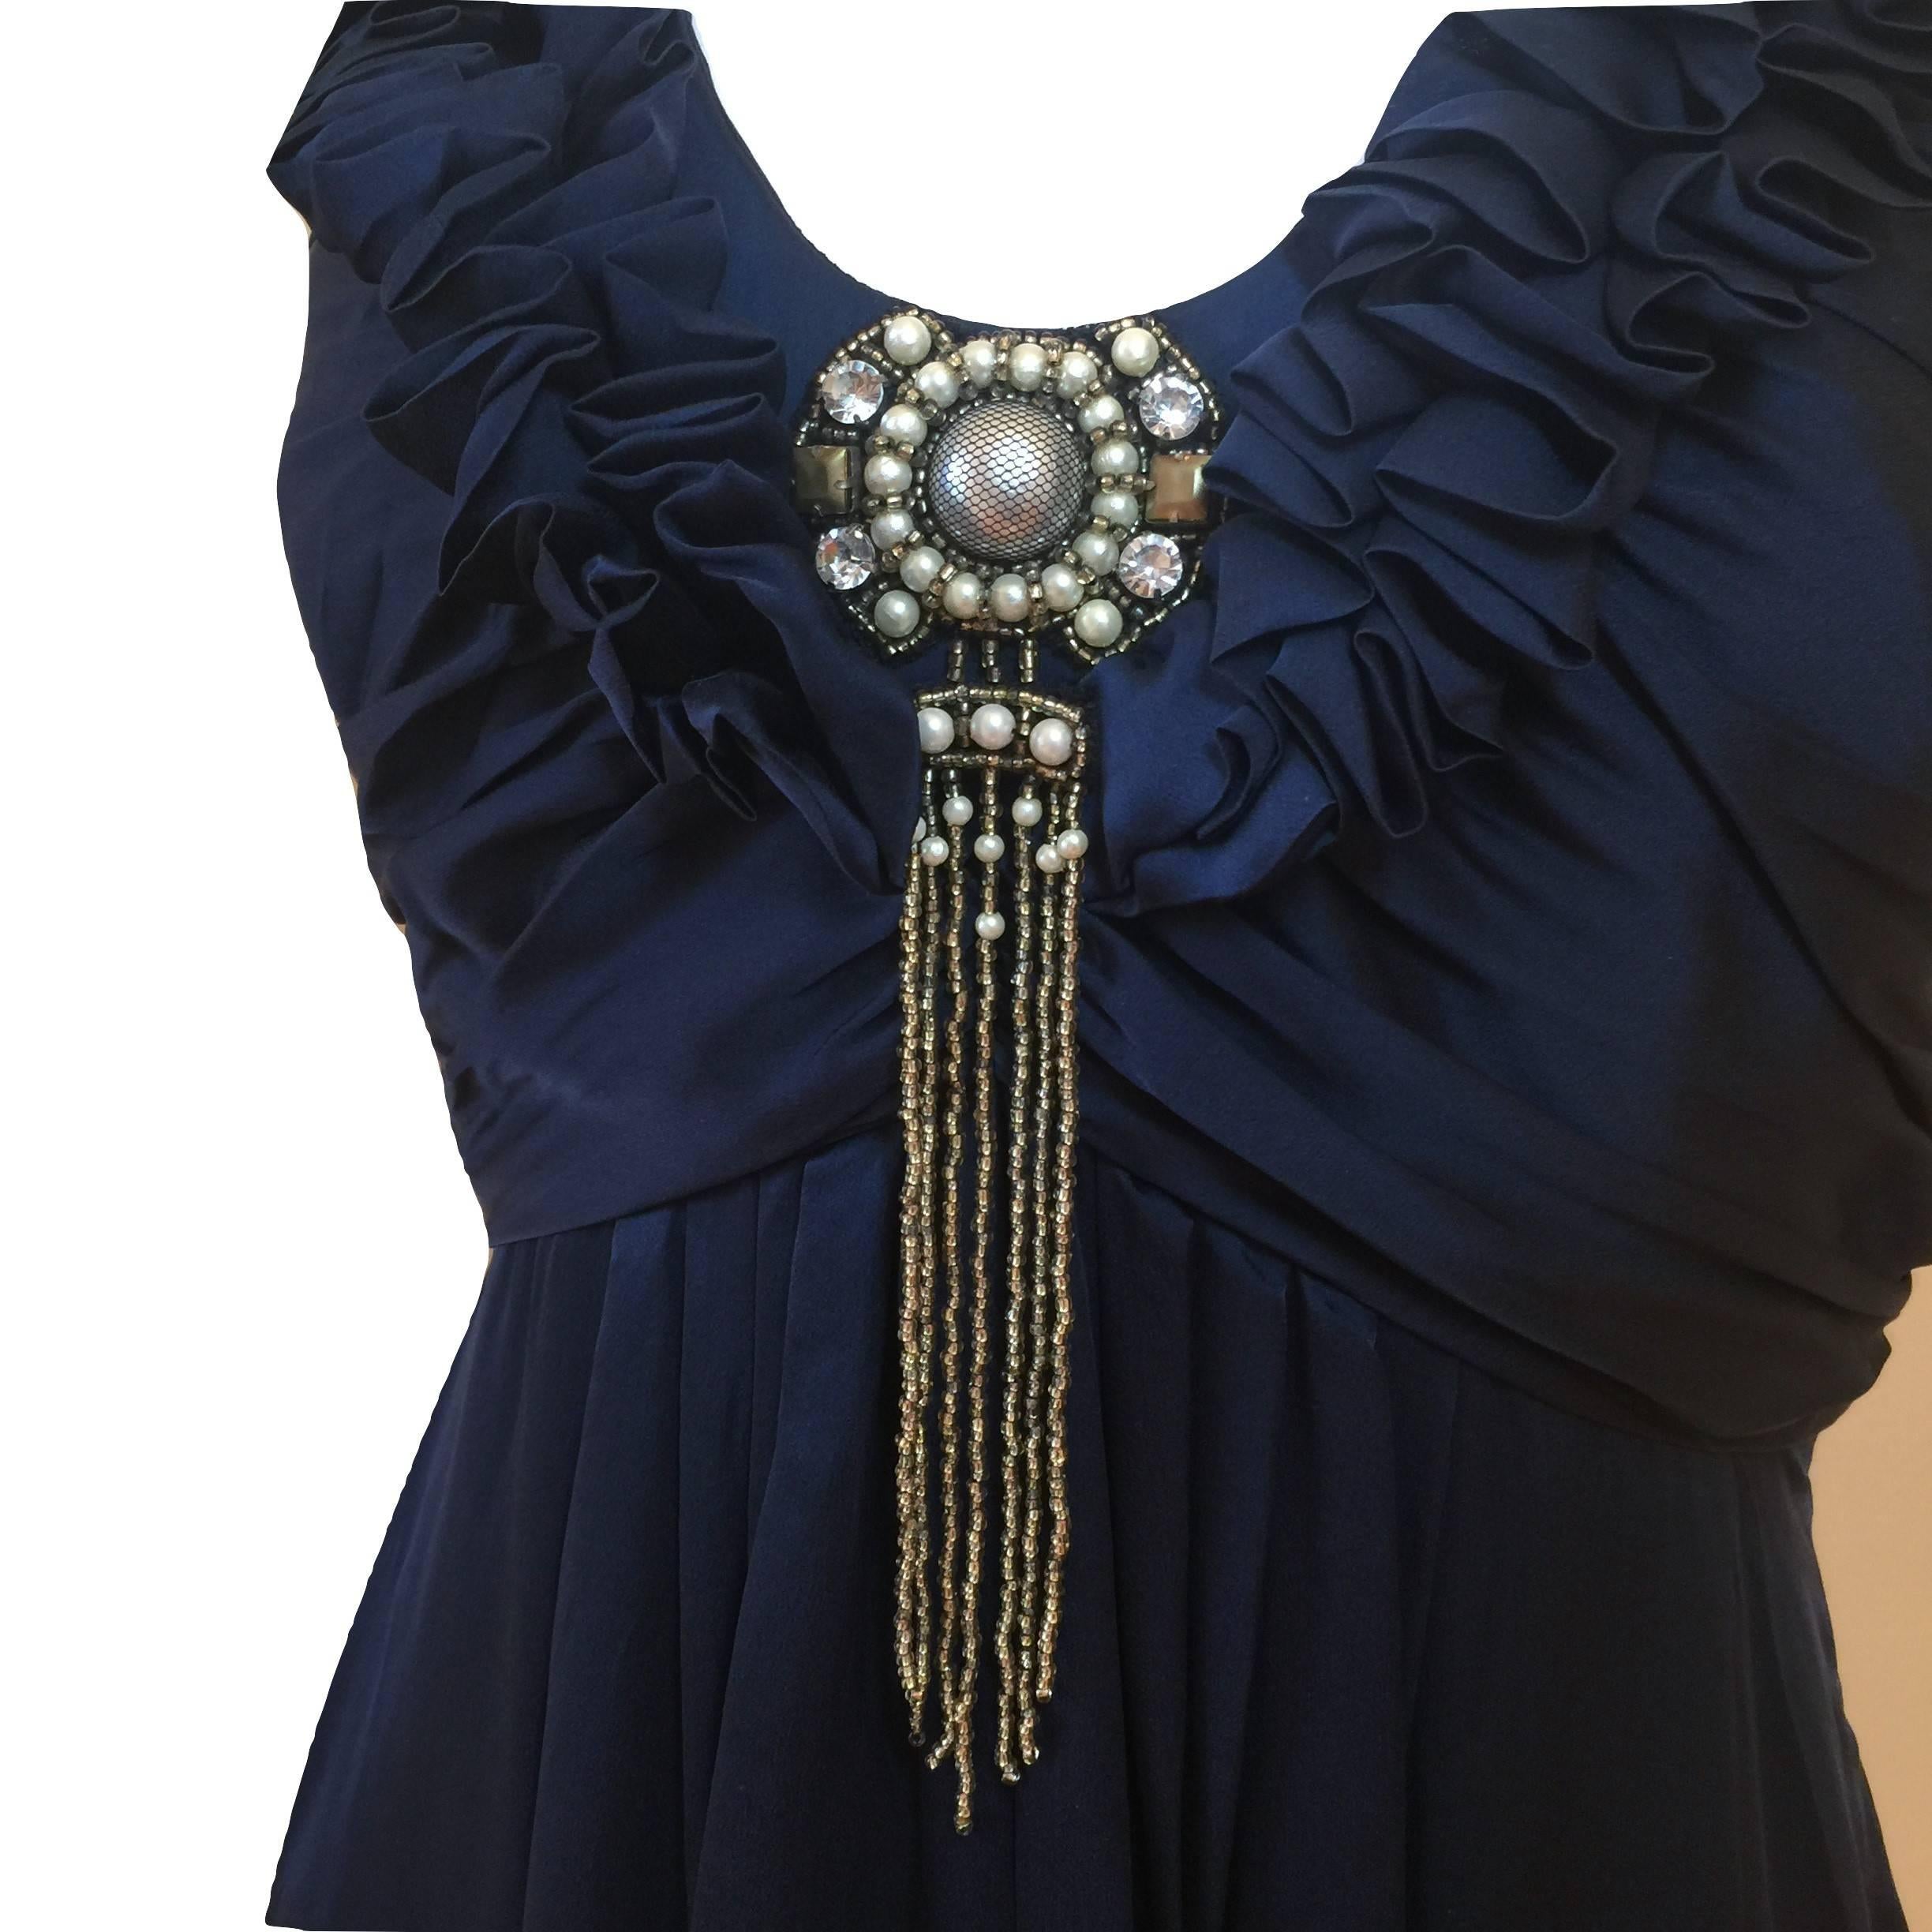 New Badgley Mischka Couture Silk Evening Dress Gown Sz 6 1